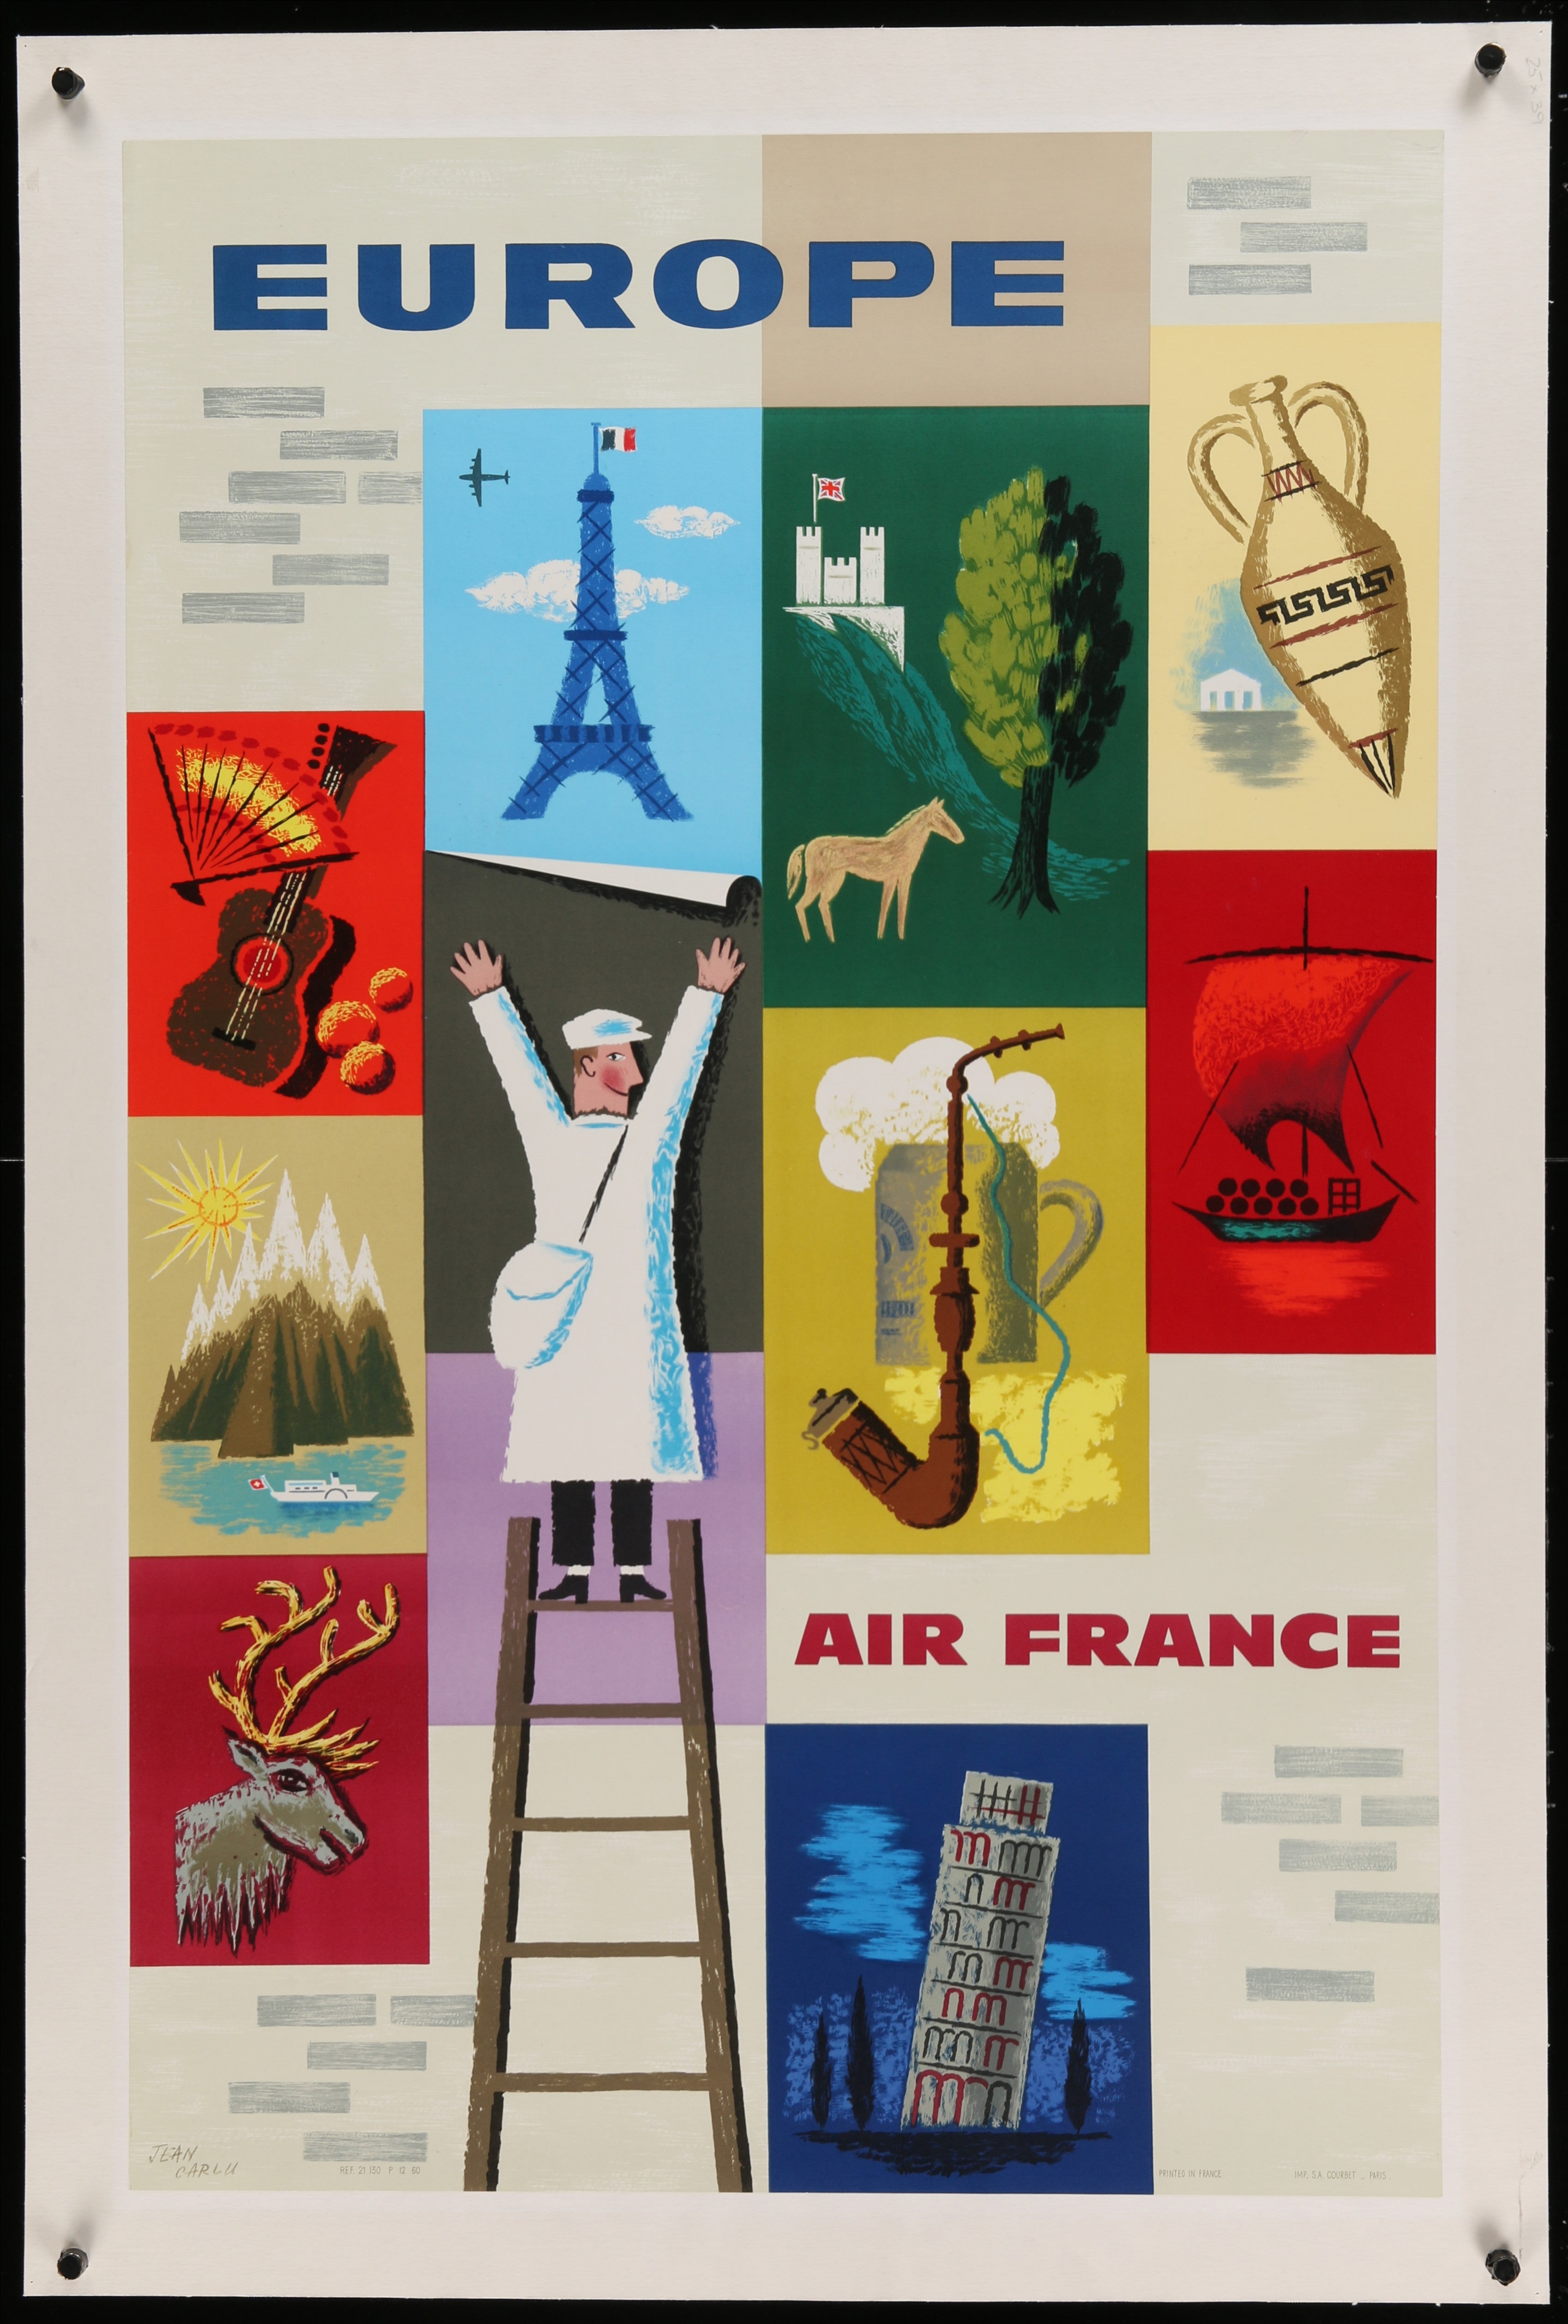 Air France Europe